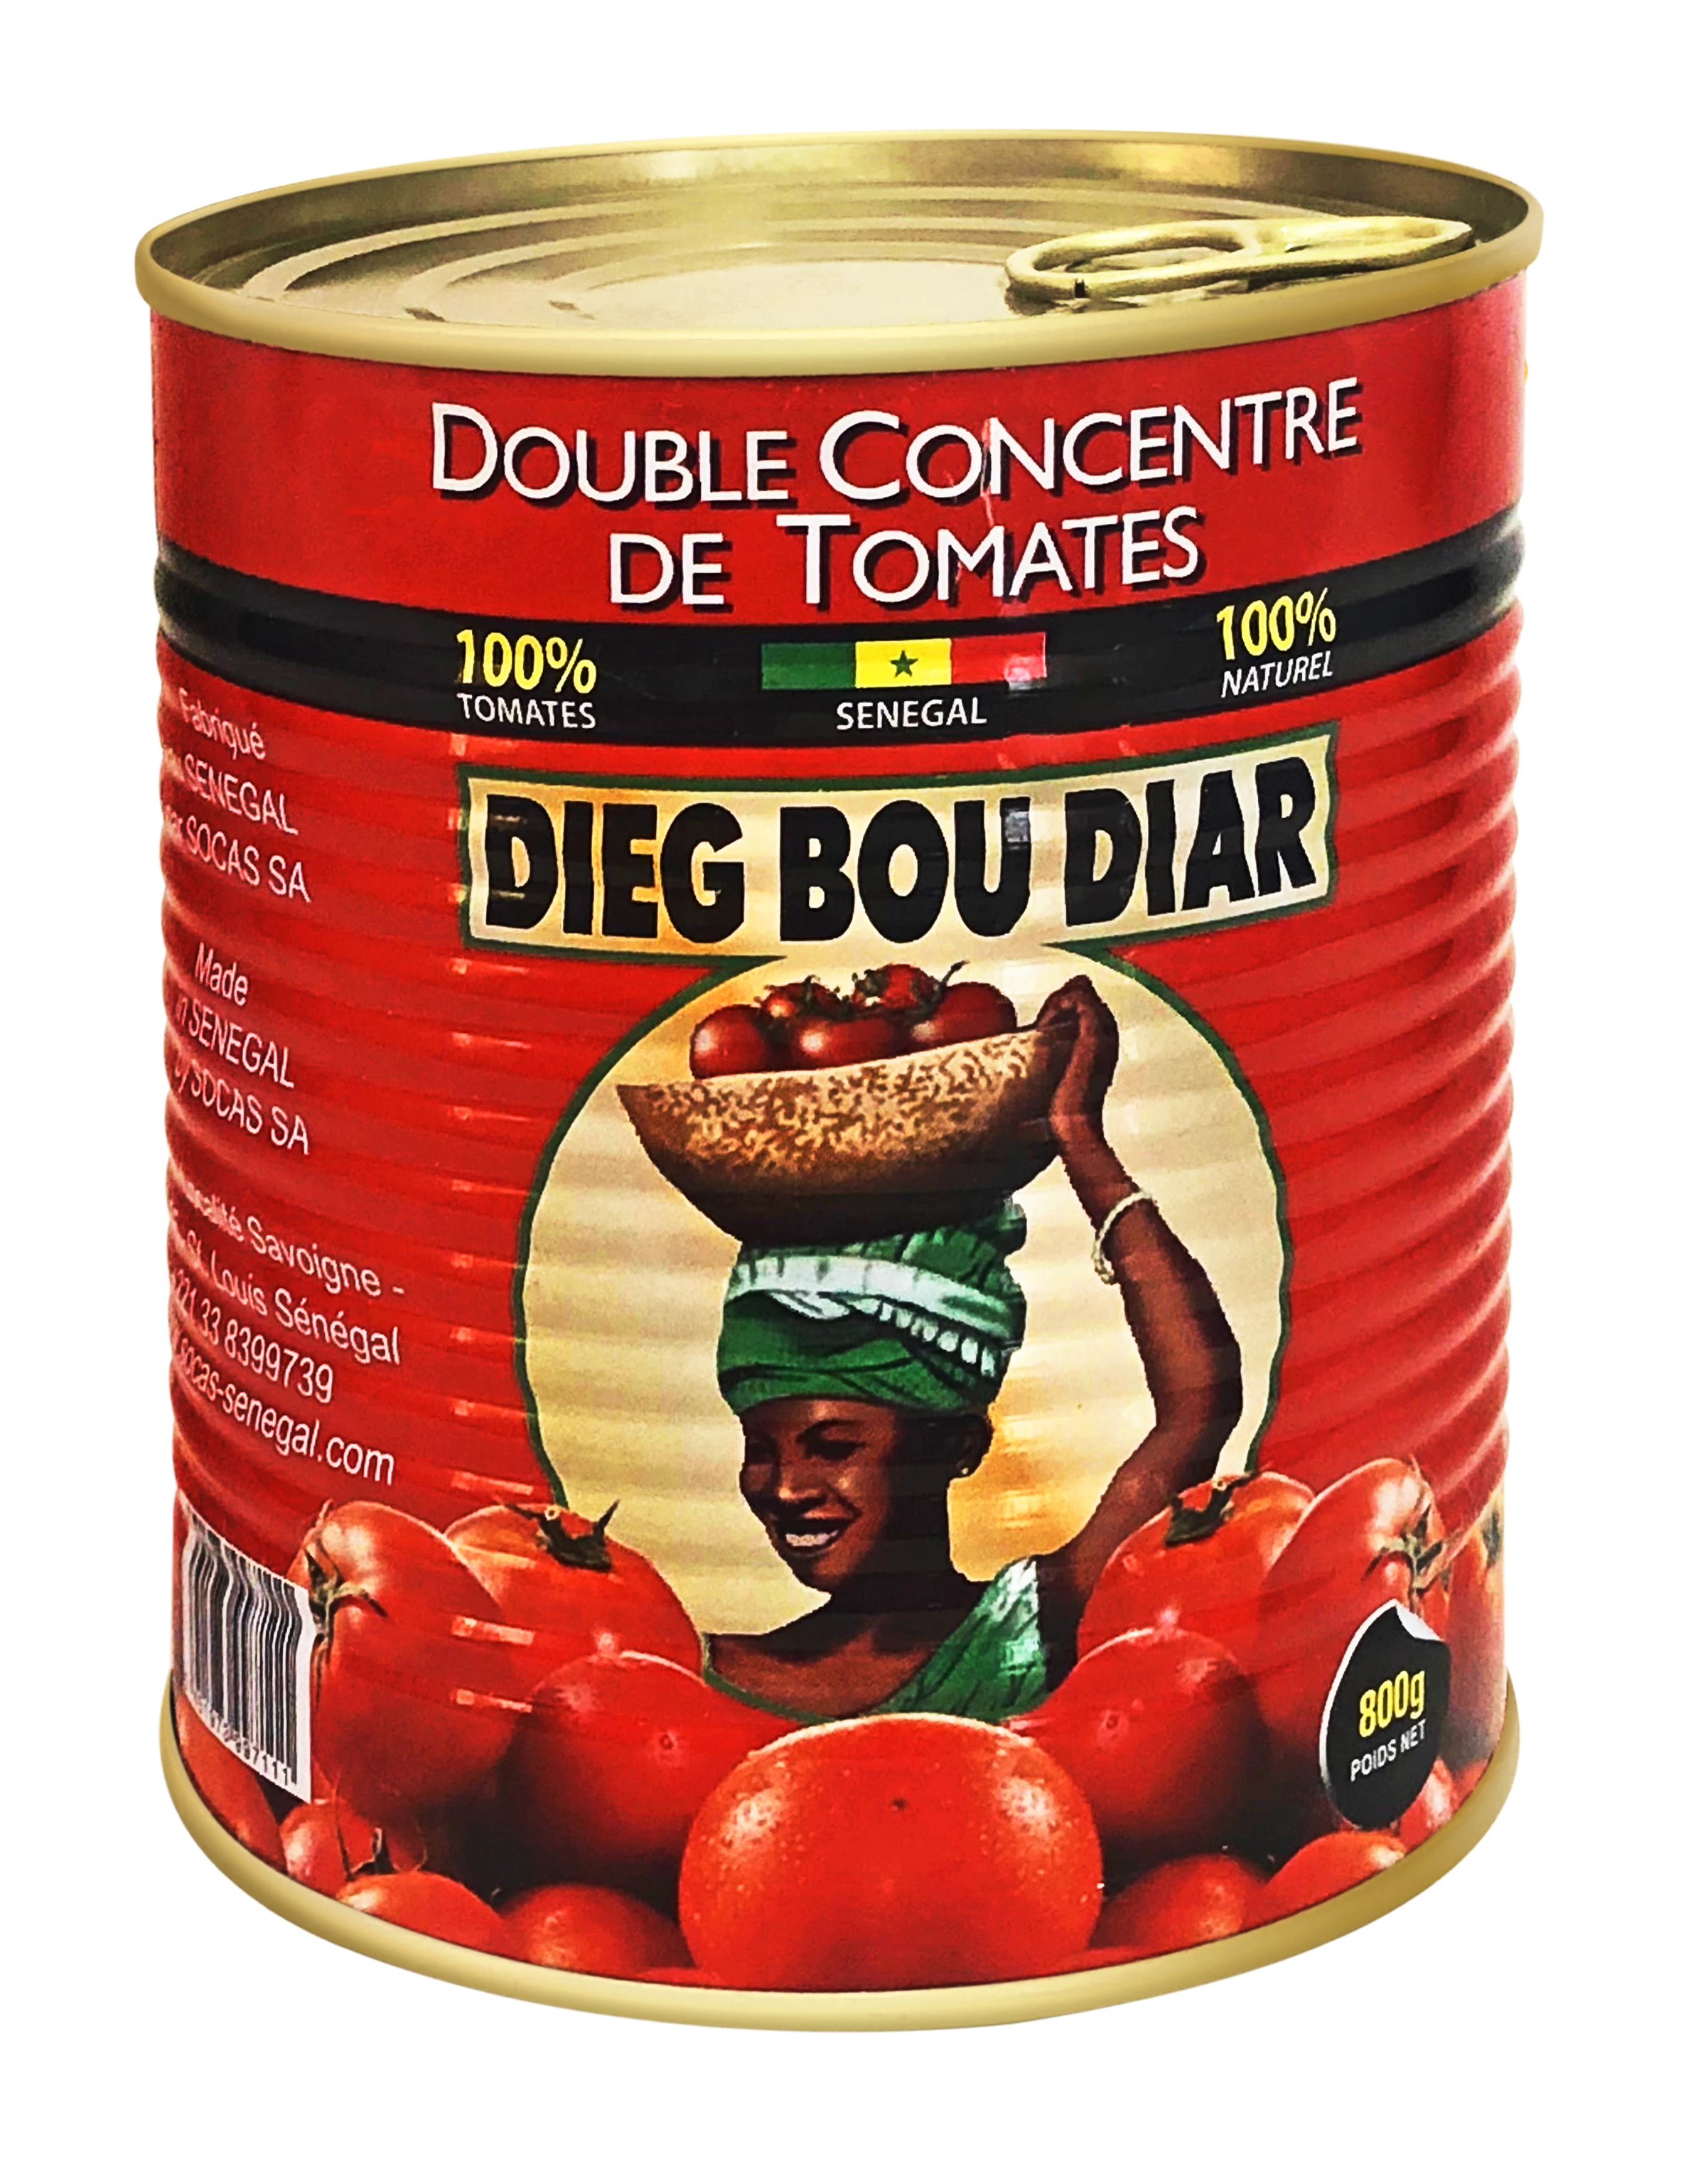 双番茄浓缩汁 (12 X 800 G) - DIEG BOU DIAR